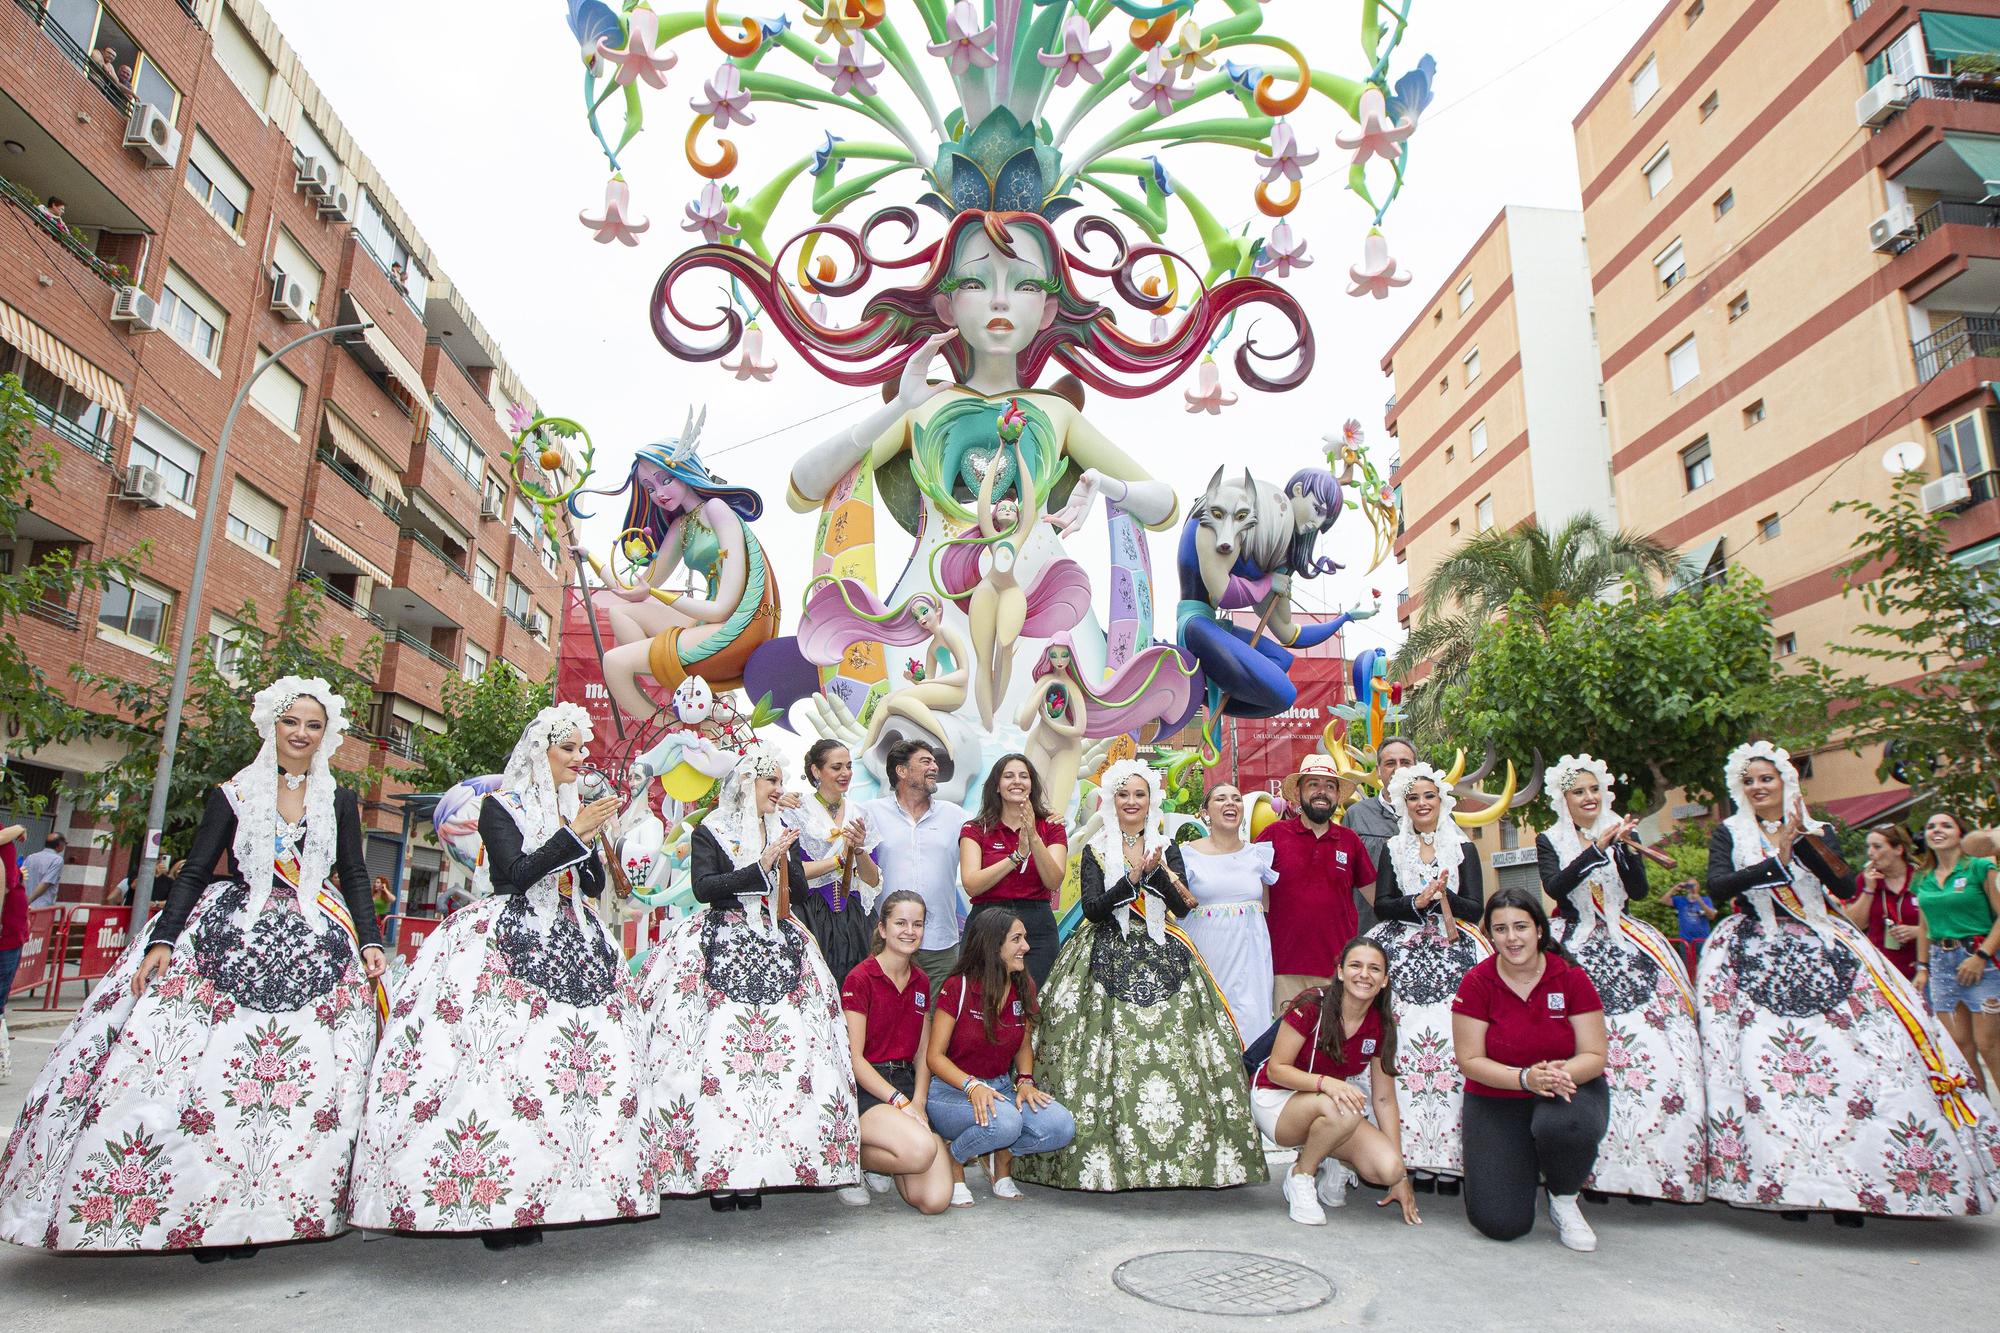 Detalles y celebracion de la hoguera Florida Portazgo, de Pere Baenas, ganadora de la Especial